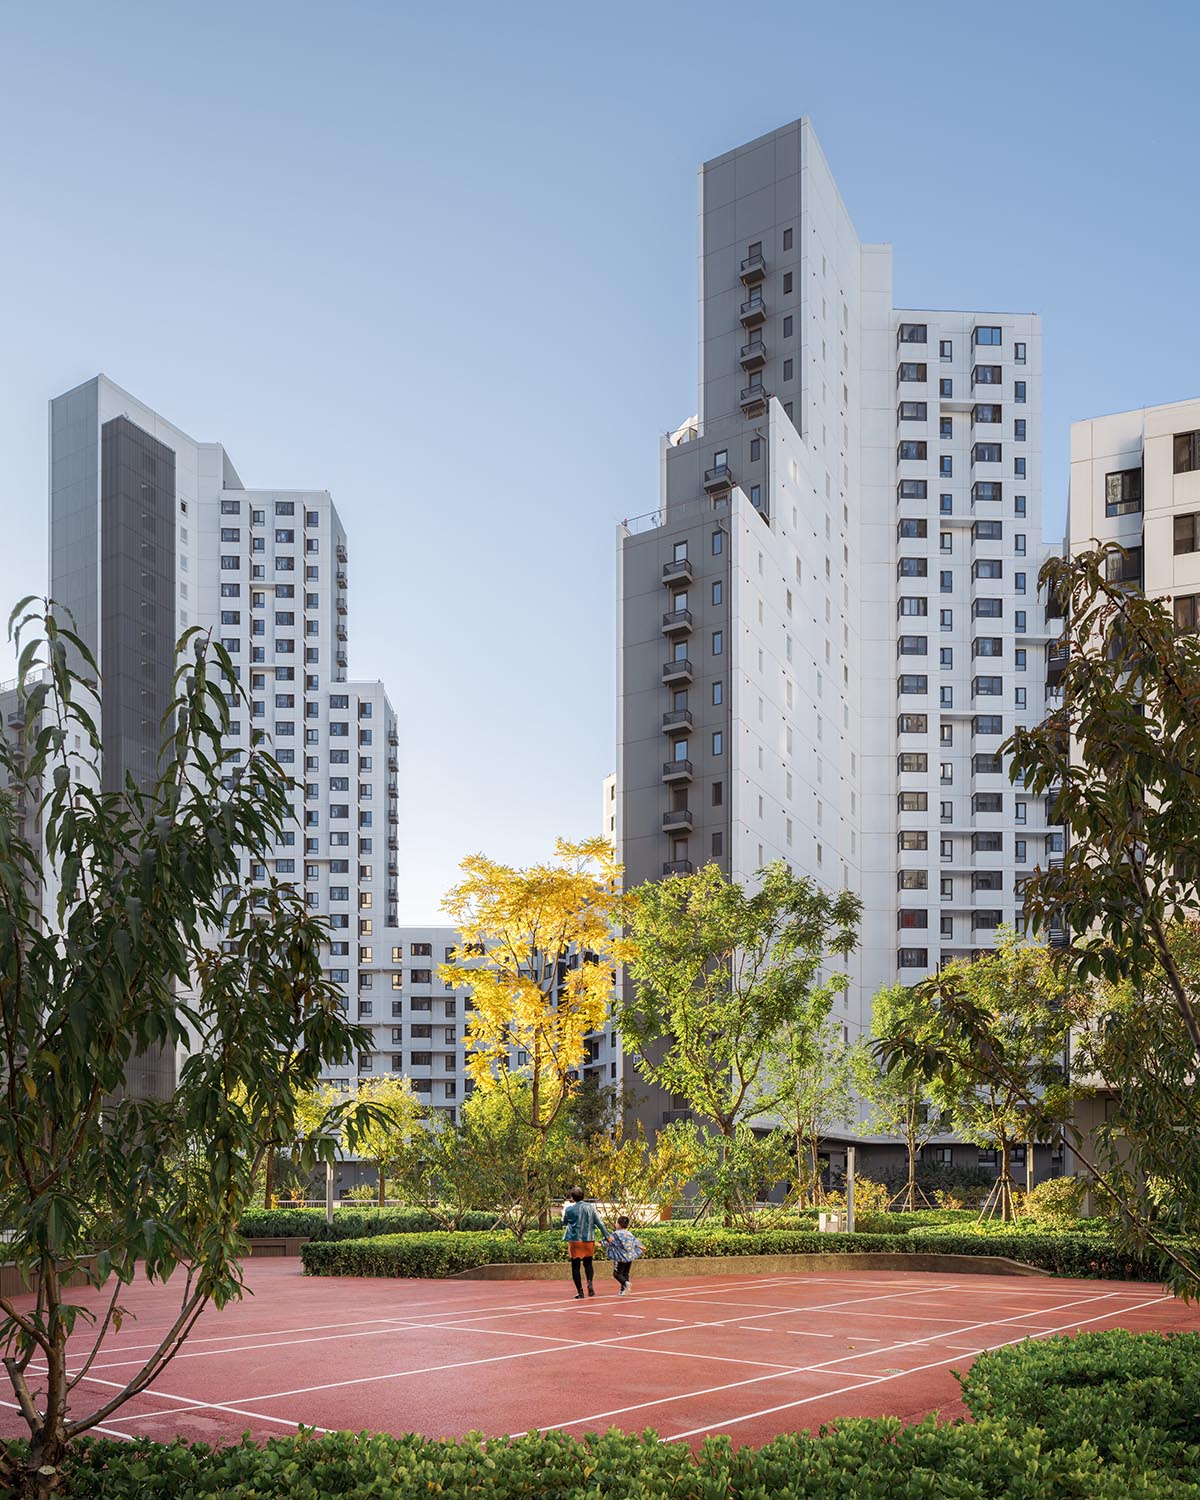 MAD построила свой первый проект социального жилья в Пекине 